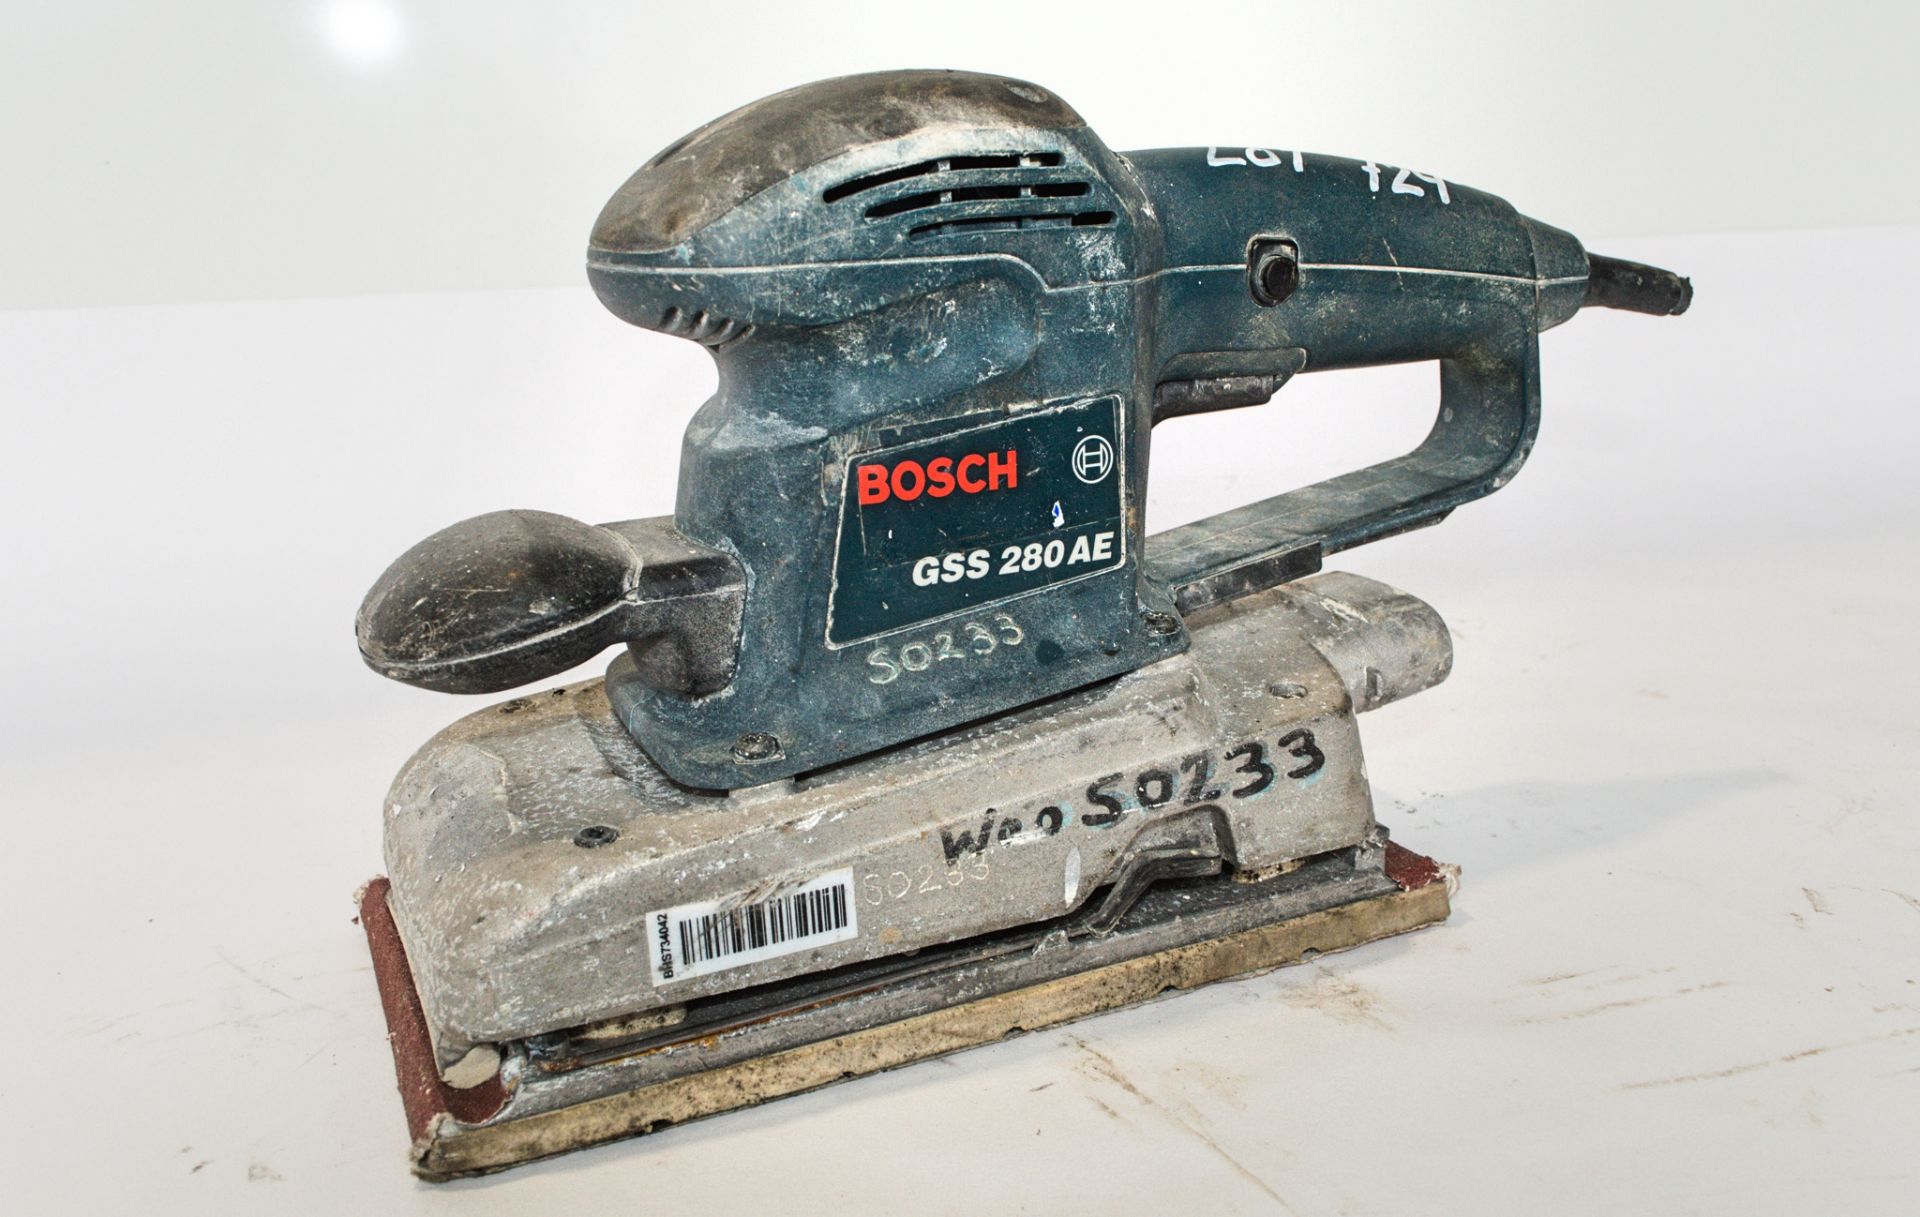 Bosch 110v sander ** Cord cut off **